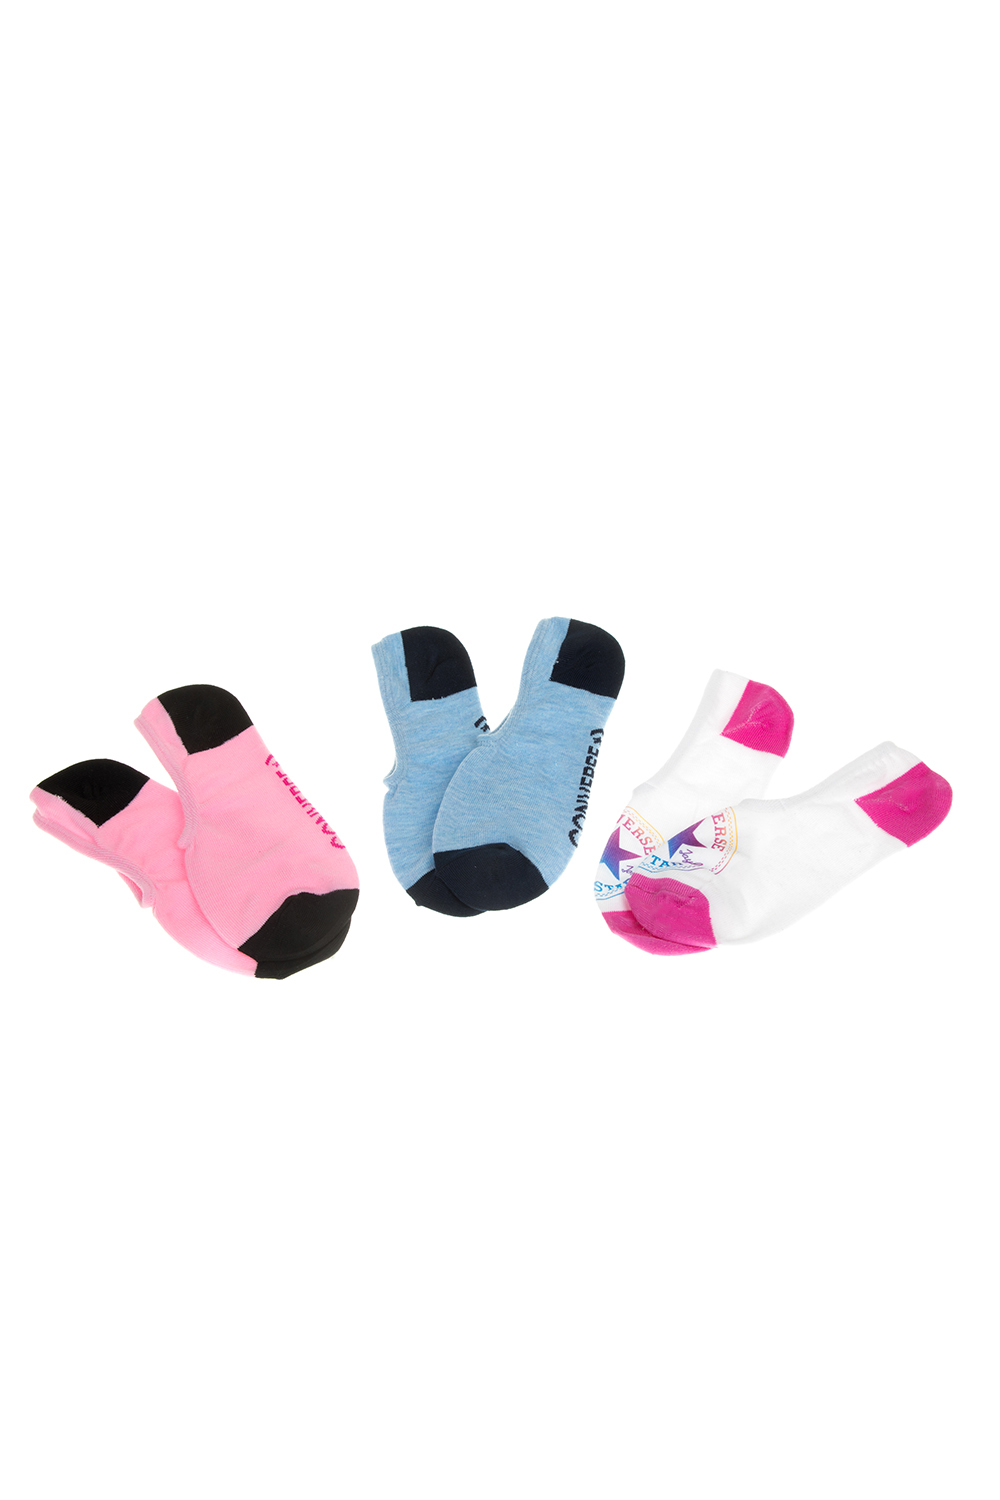 CONVERSE - Σετ γυναικείες κάλτσες Converse λευκές-ροζ-γαλάζιες